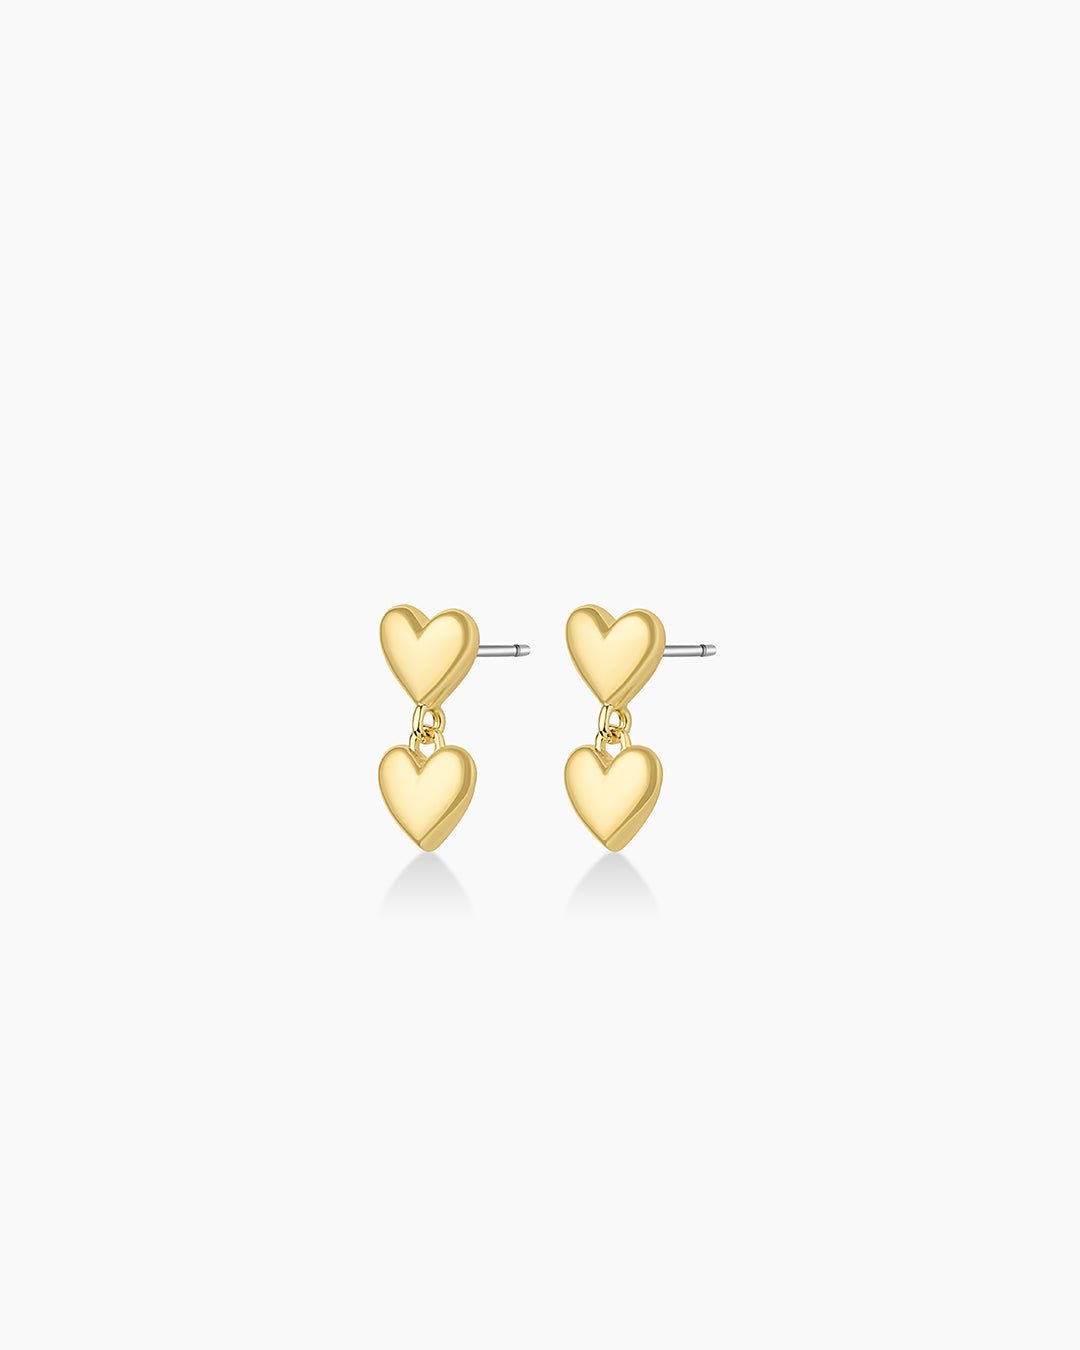 Heart Charm Stud Earring in Heart/Gold Plated, Women's by Gorjana